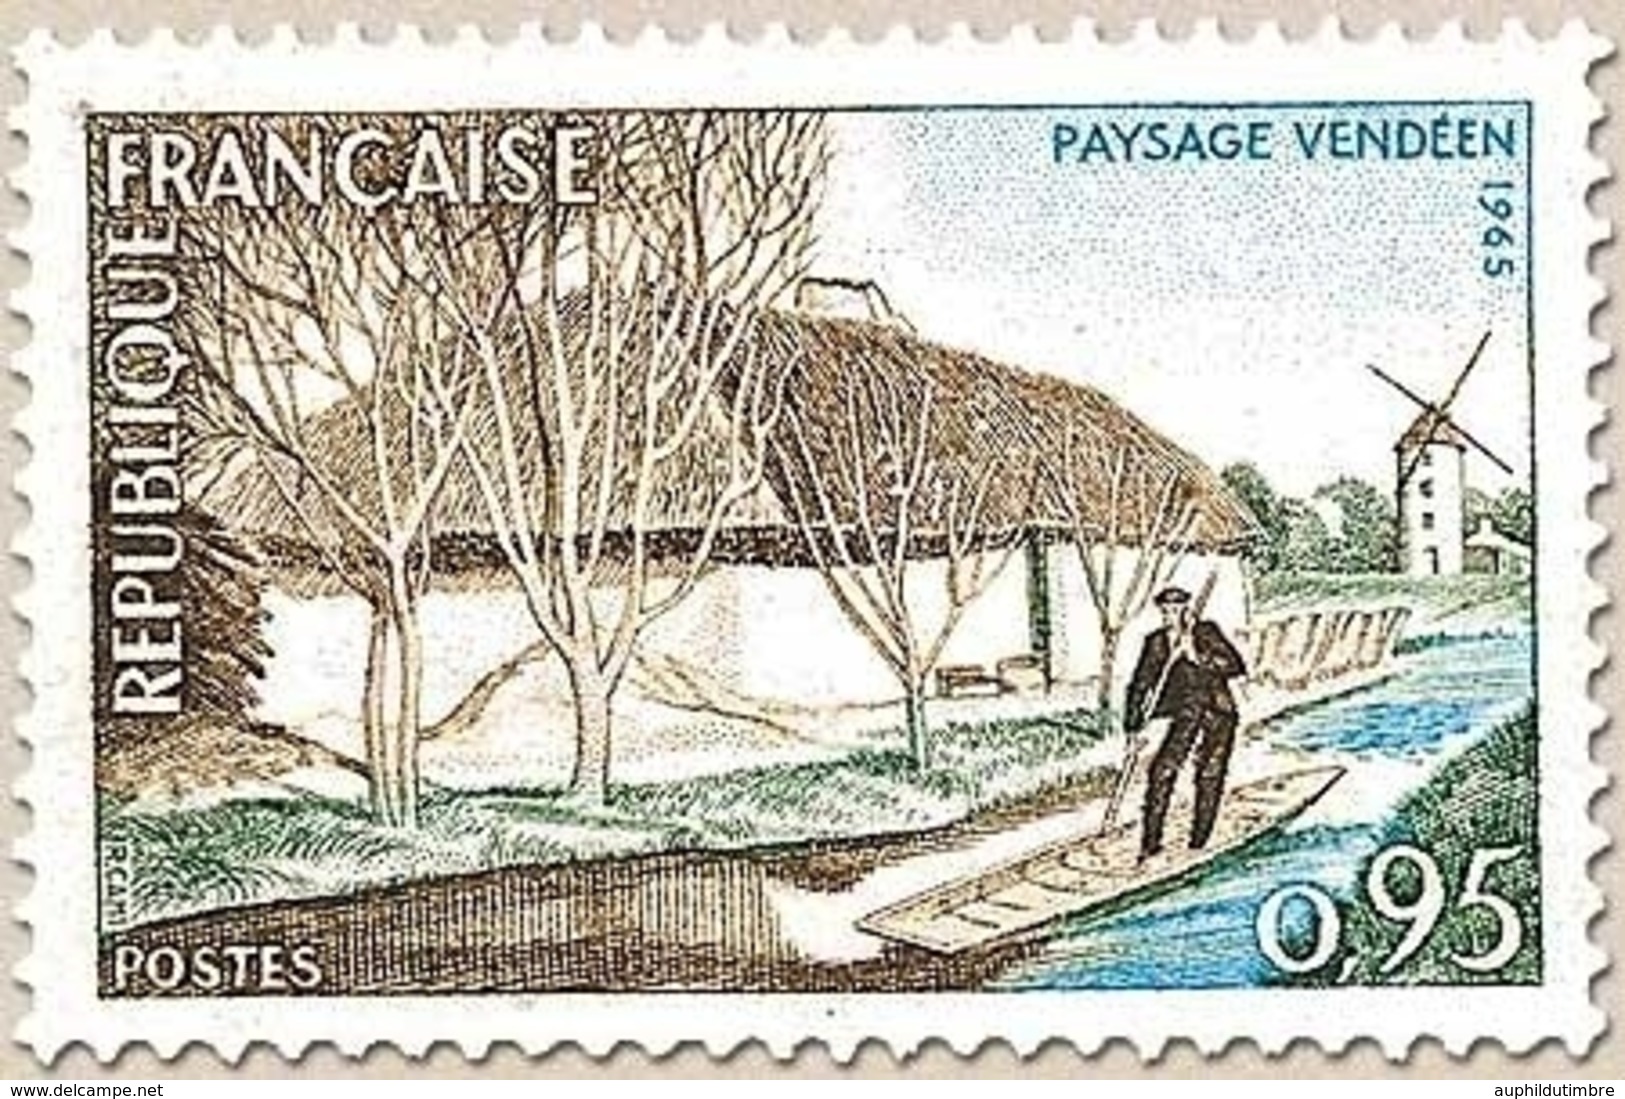 Série Touristique. Paysage Vendéen. 95c. Bistre, Vert Et Bleu Y1439 - Unused Stamps